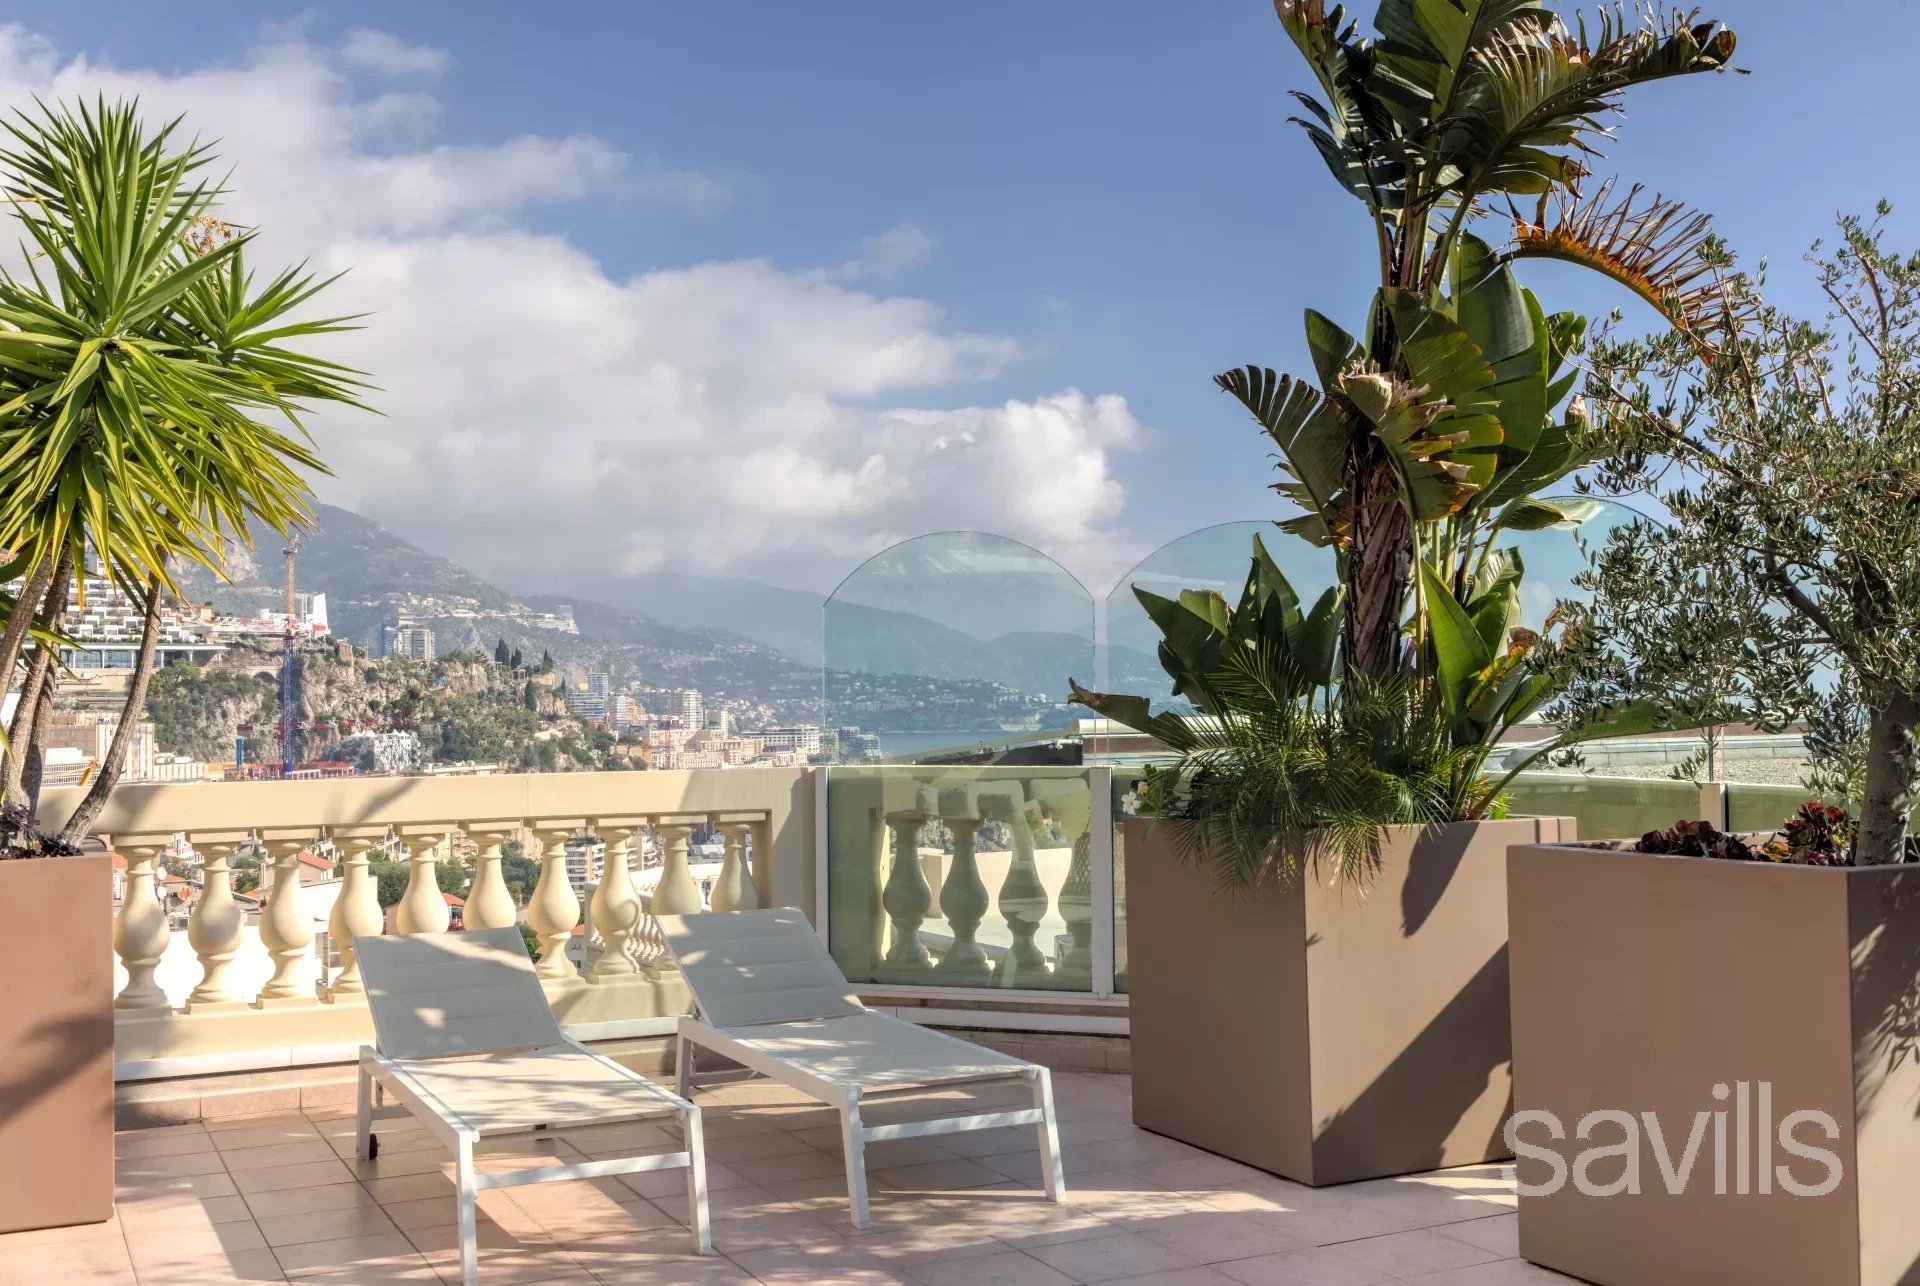 Квартира в Кап дай , терраса 74 кв.м  с видом на княжество Монако